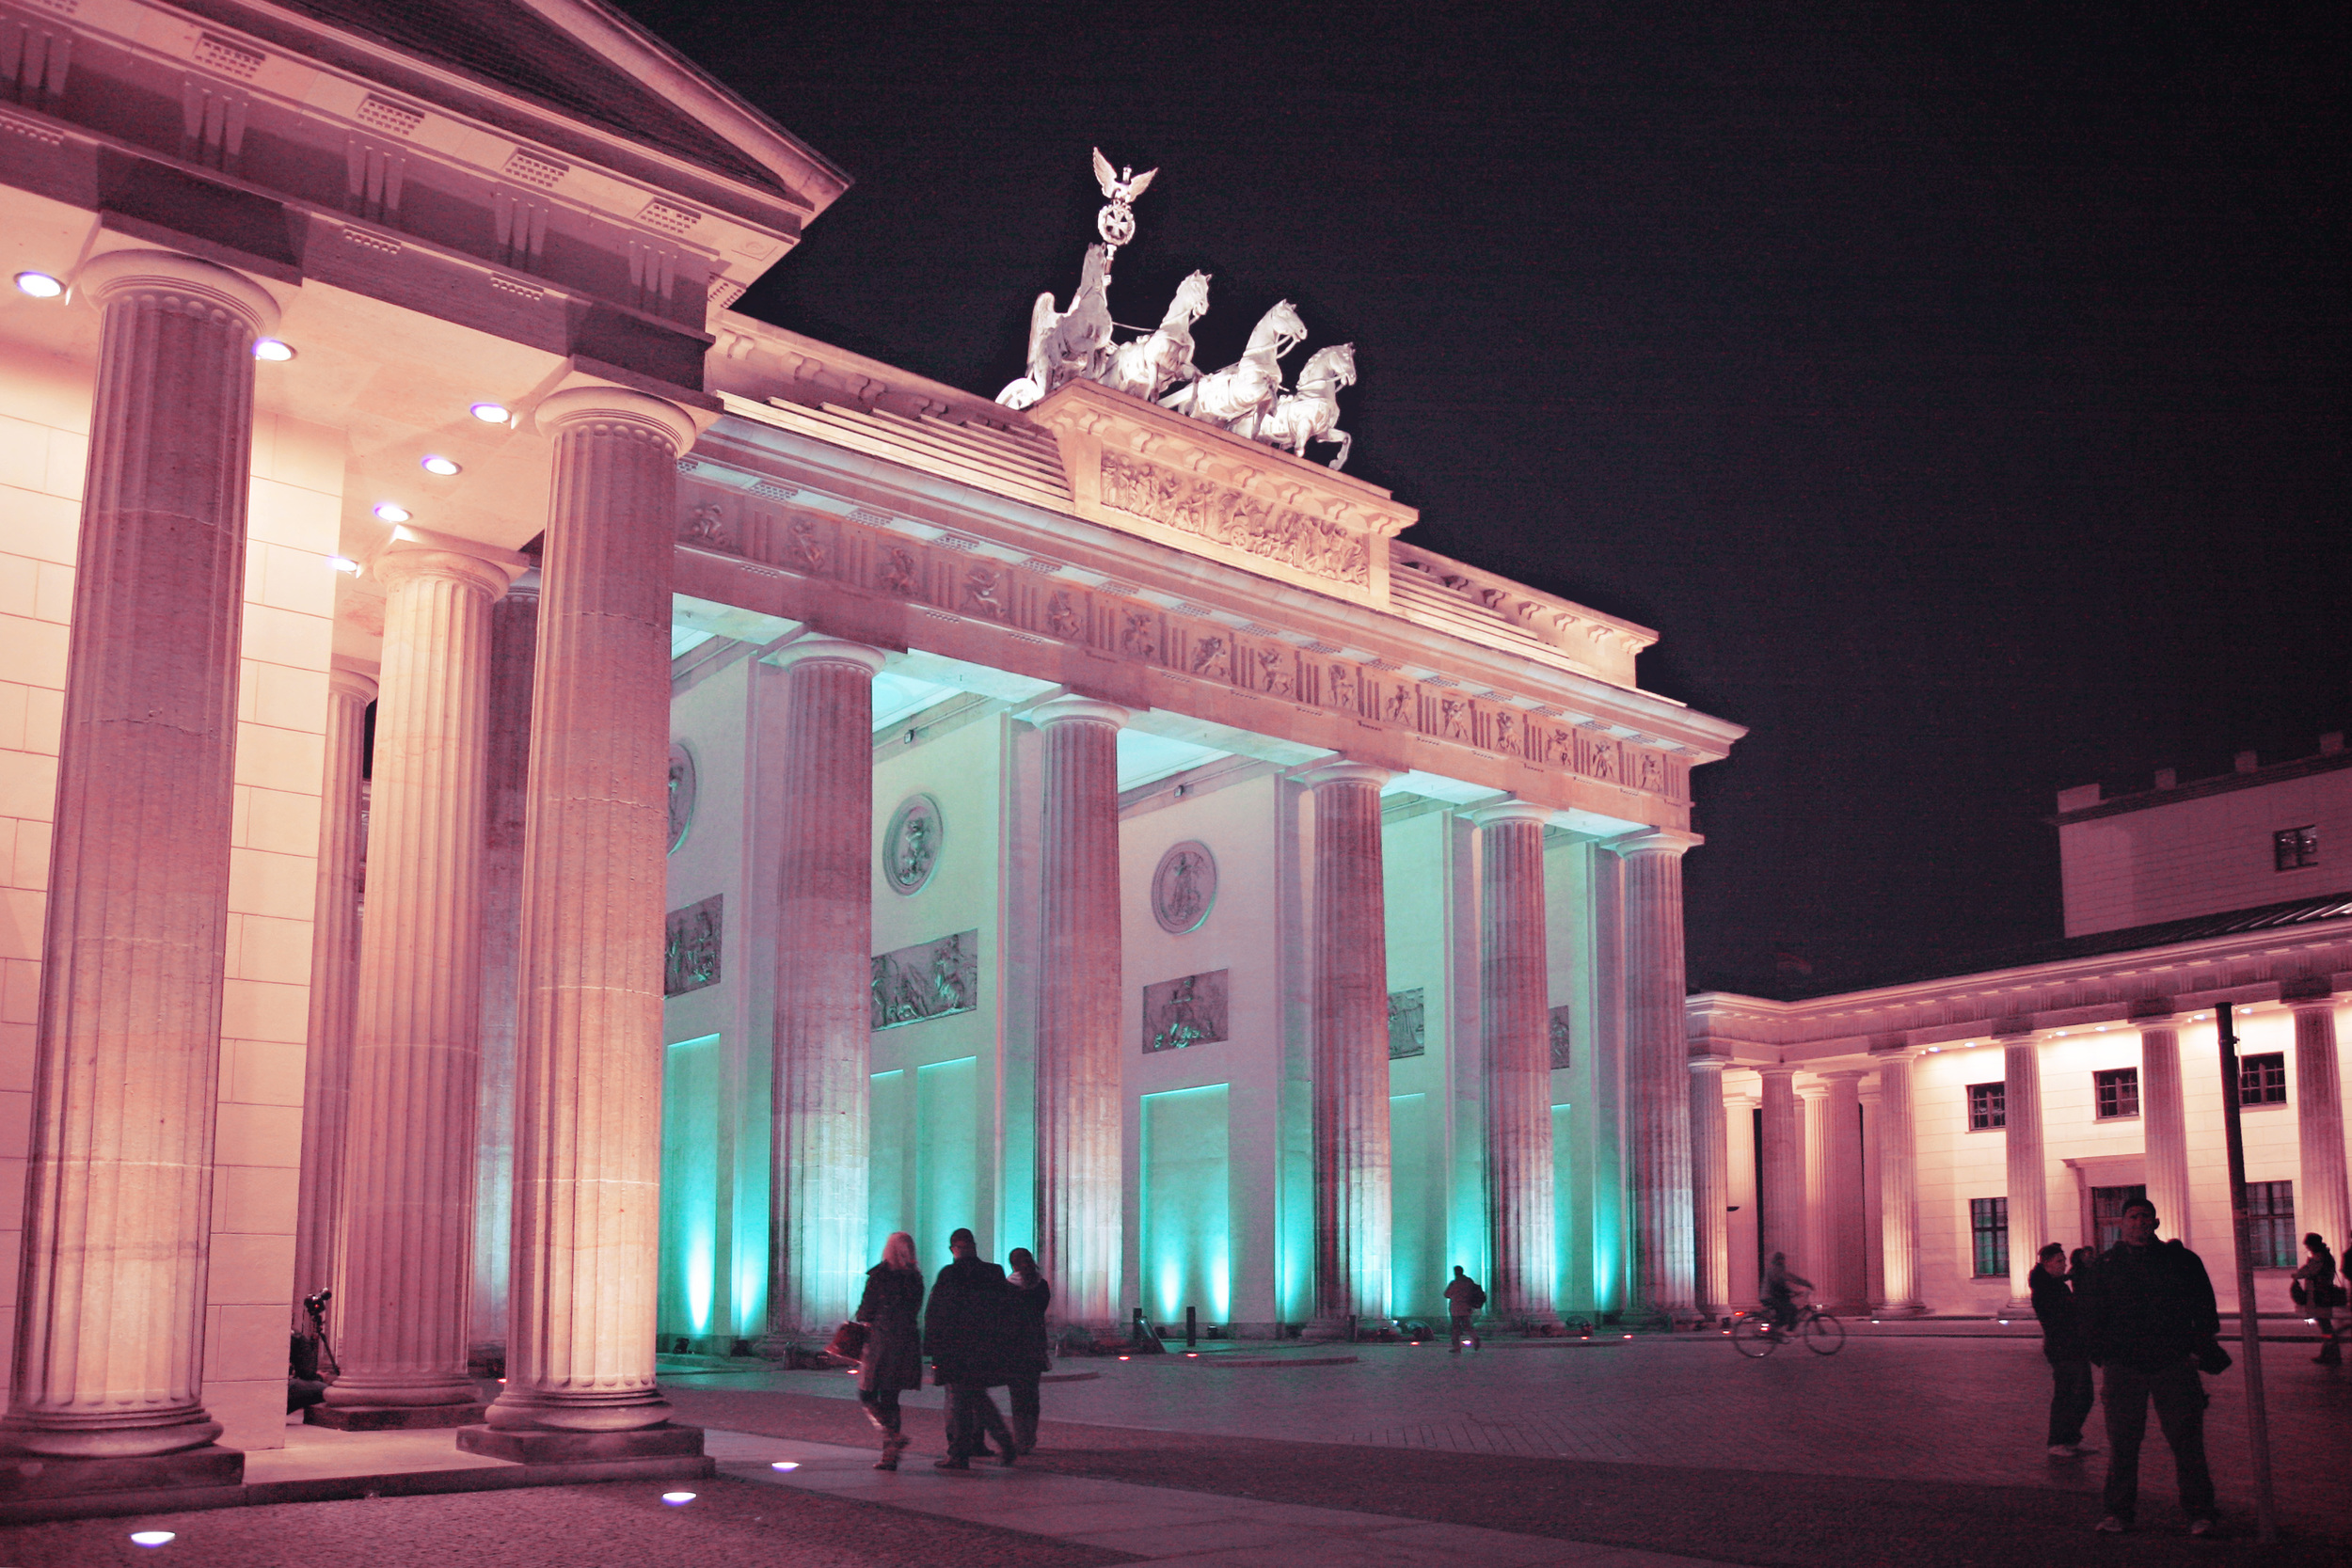 BER_FoL-Brandenburg Gate_04a.jpg